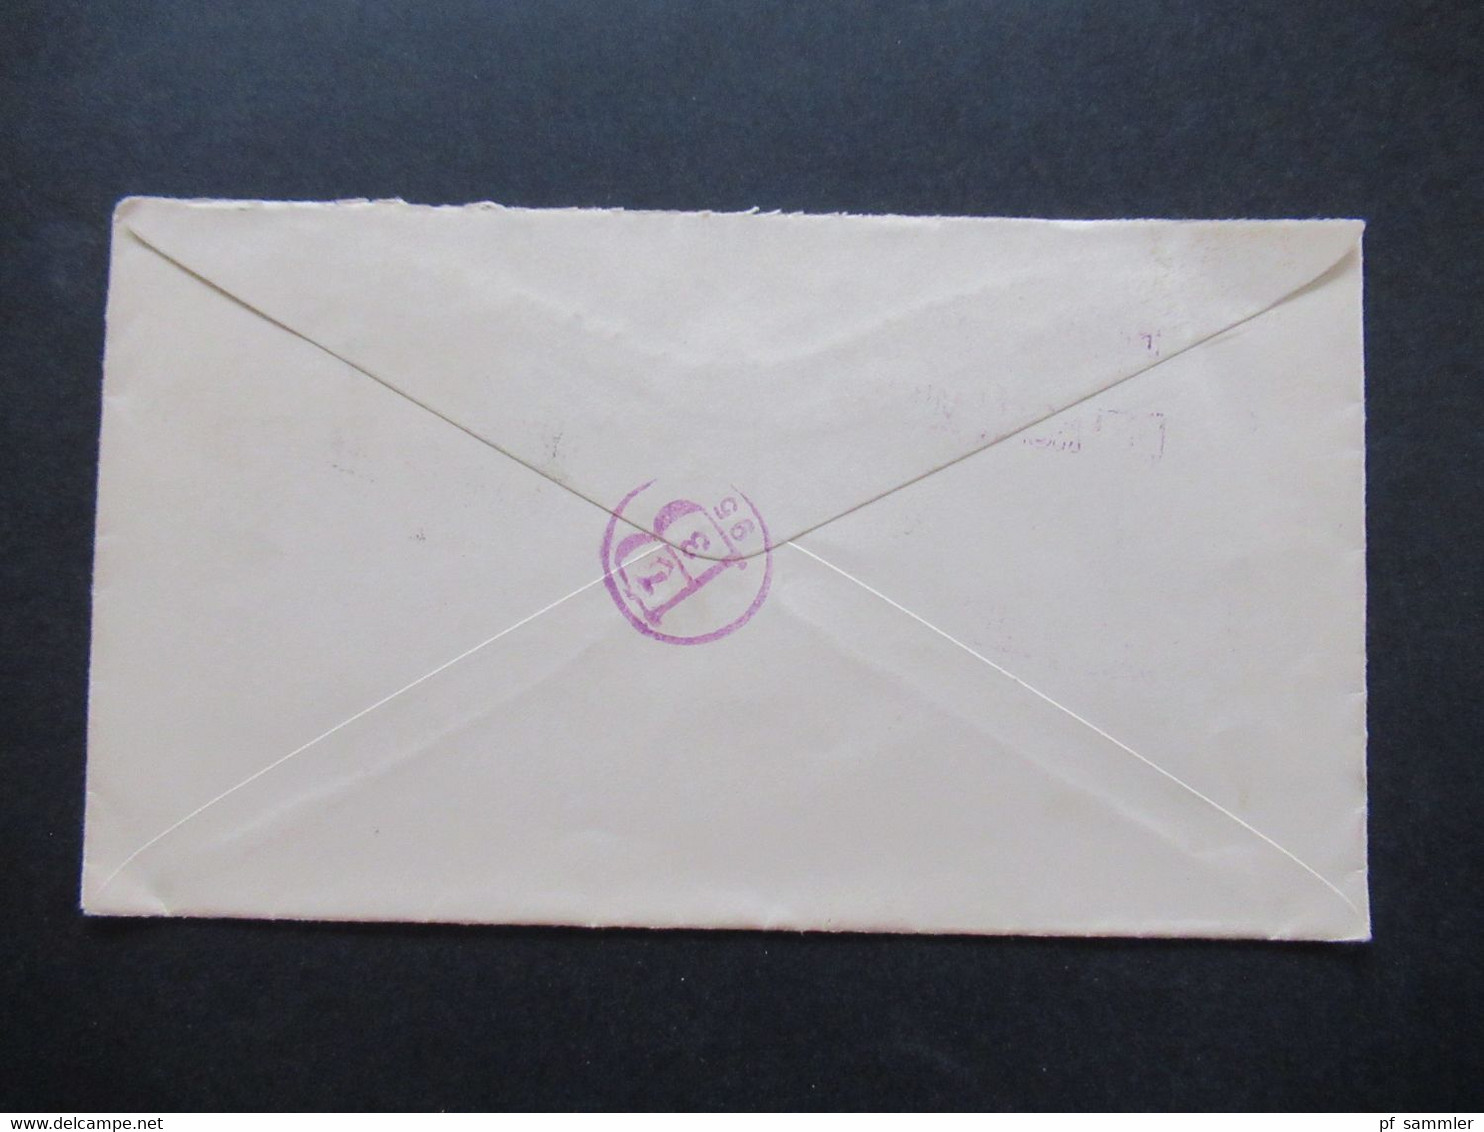 USA 1895 Michel Nr. 62 Und 67 MiF Einschreiben Registered Jul 1 1895 Detroit Mich. Violetter Nummernstempel - Covers & Documents